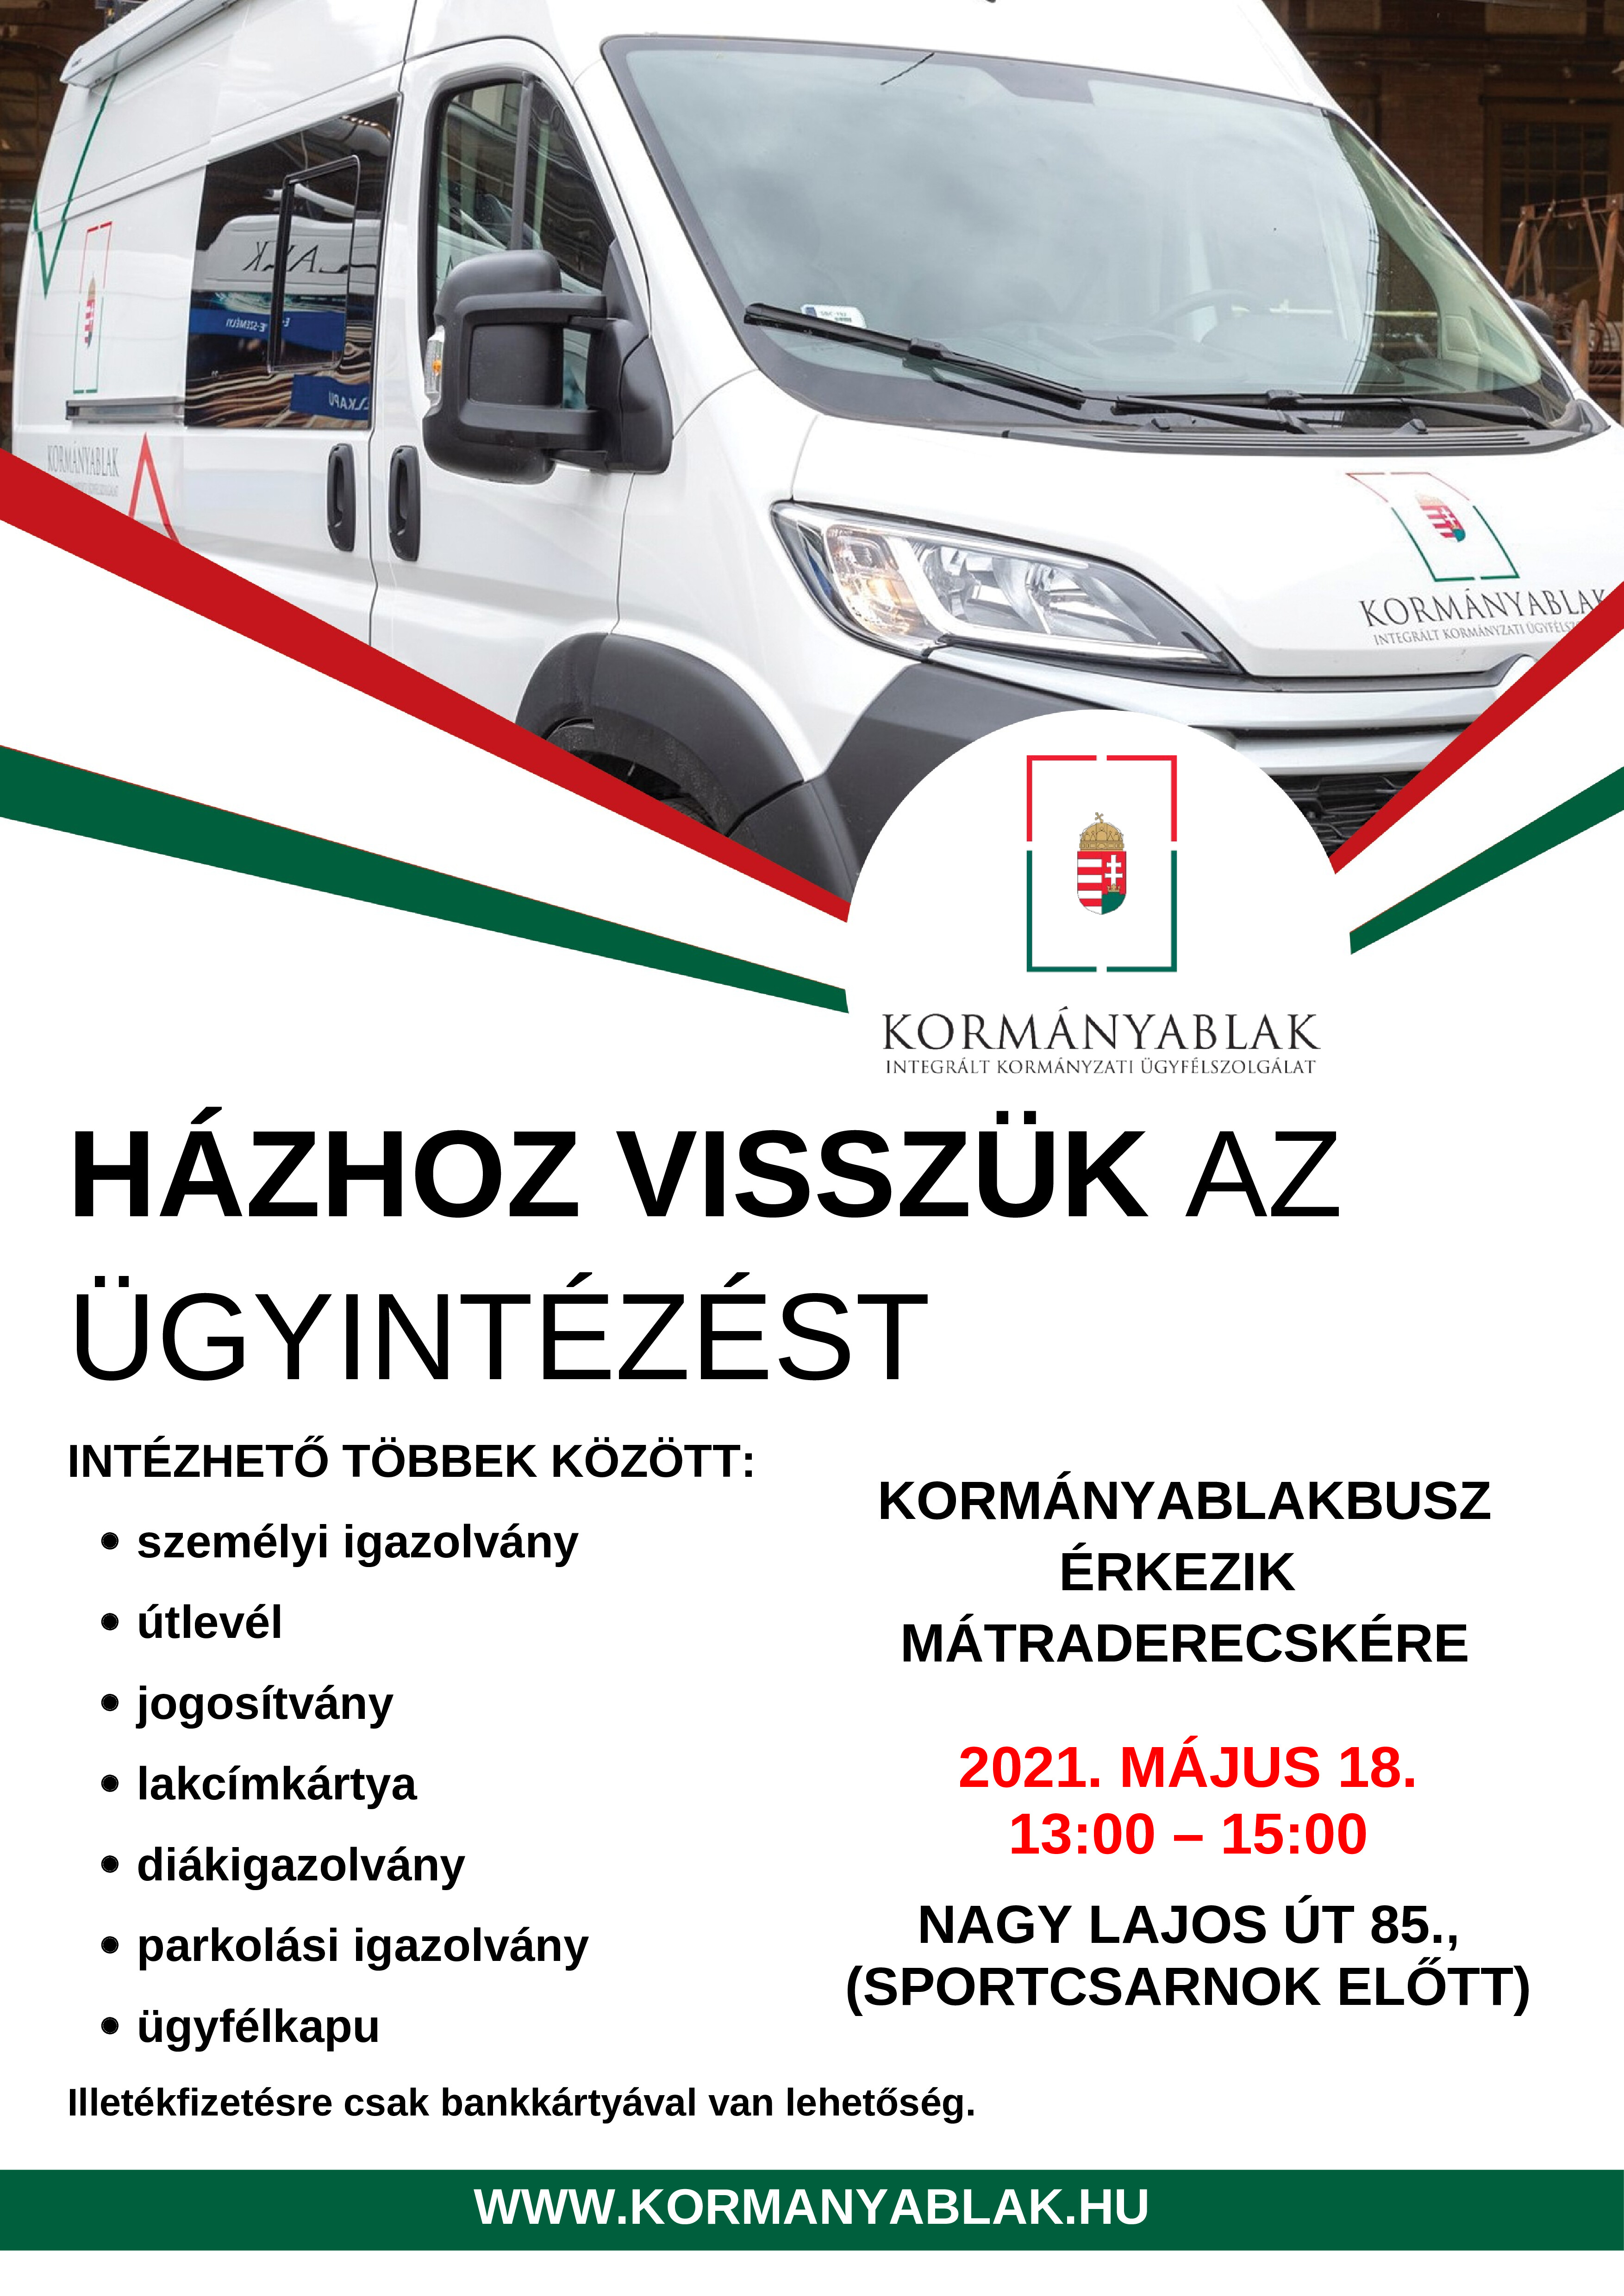 Kormányablakbusz Mátraderecskén 2021.05.18. kedd 13:00-15:00